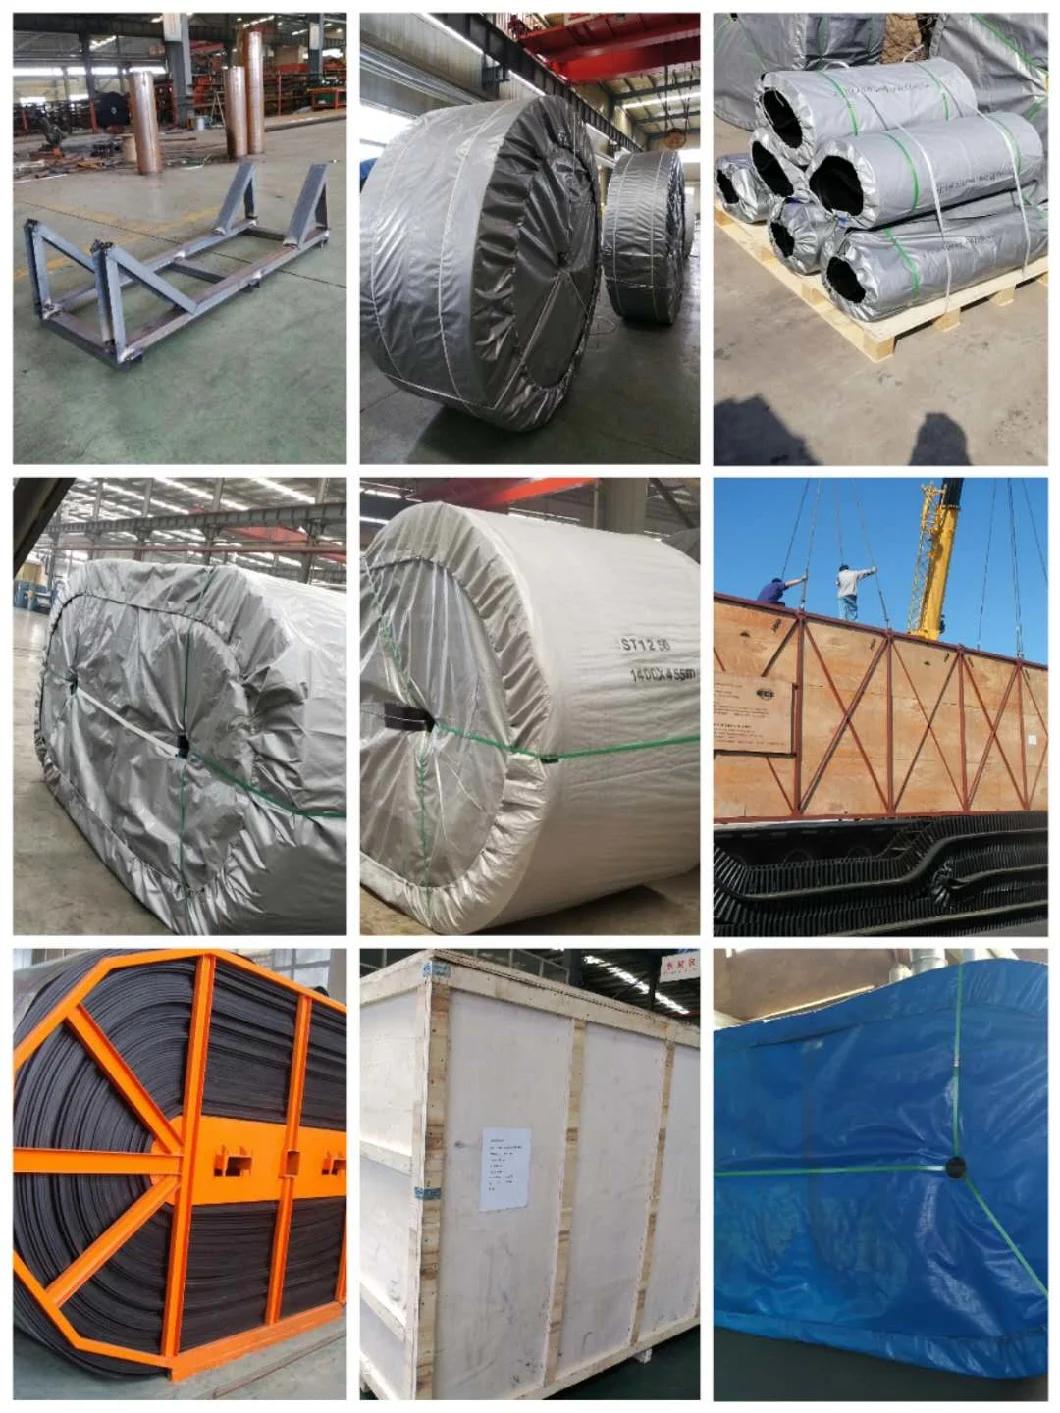 800mm Width Rubber Conveyor Belt for General Industrial Equipment